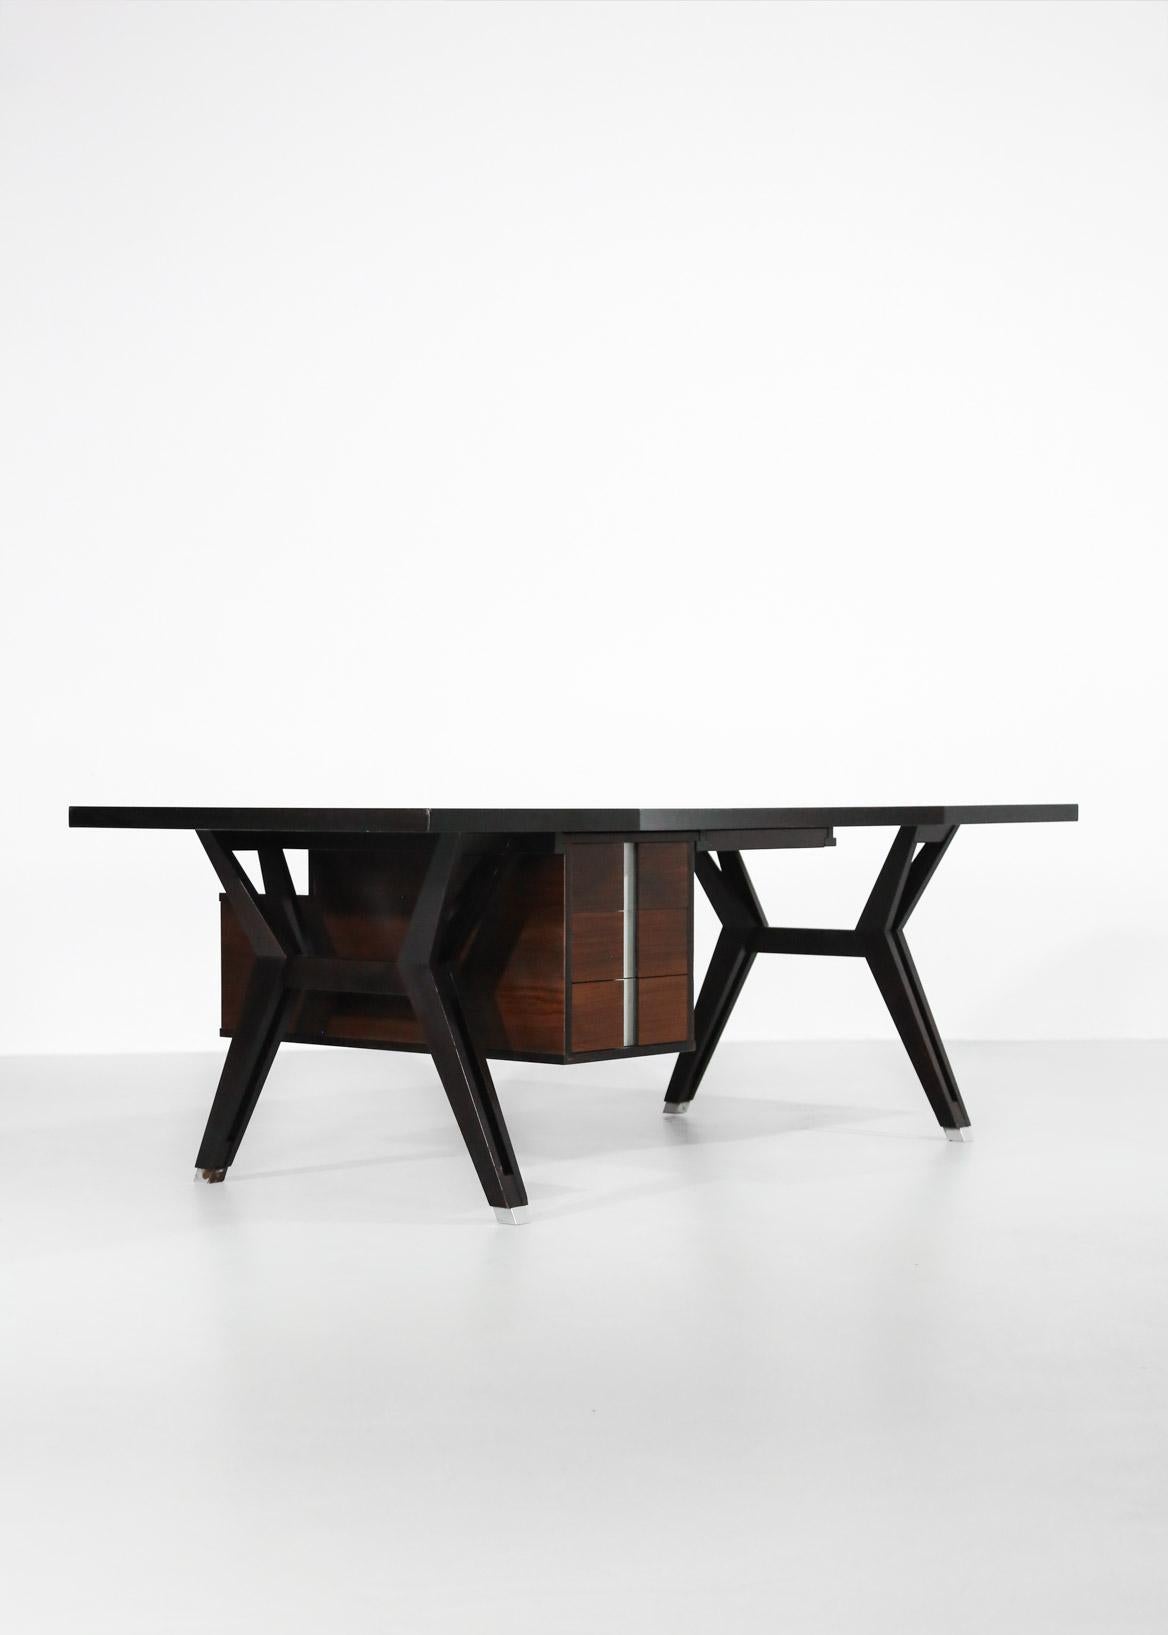 Large Ico Parisi Desk for MIM, Italian Design 1